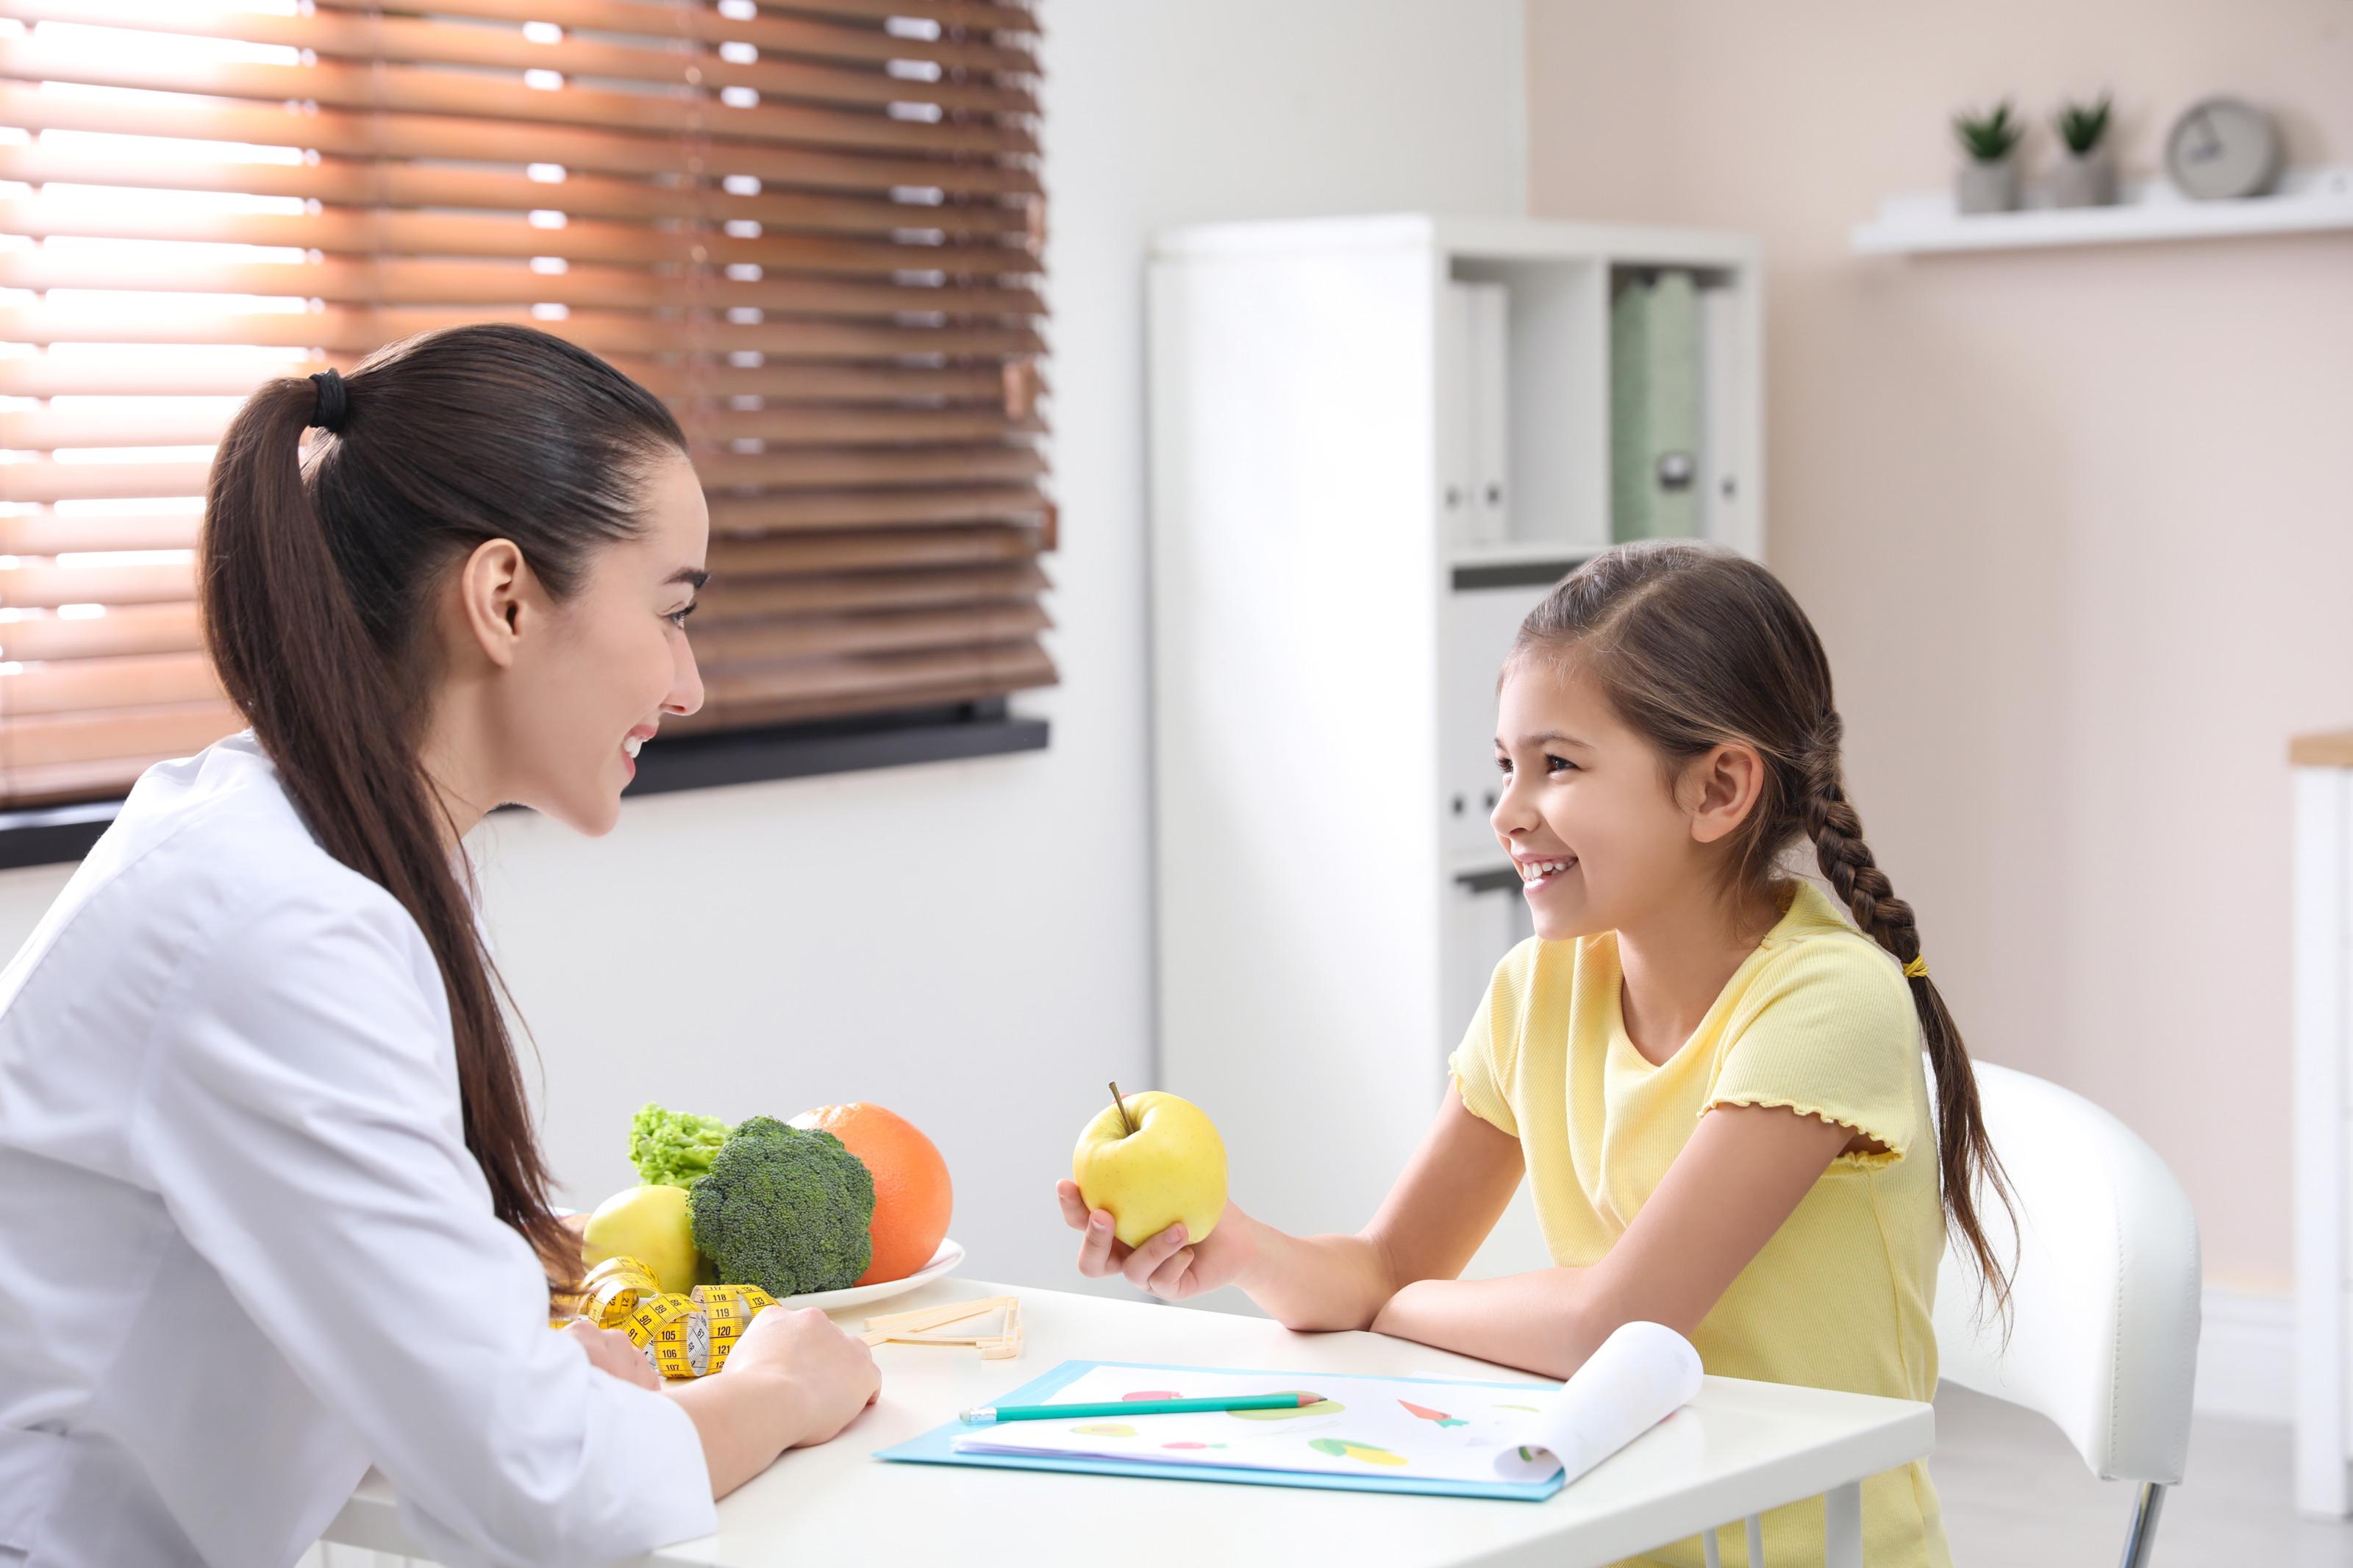 Lächelndes Kind sitzt an Tisch erwachsener, lächelnder Person in weißem Kittel gegenüber und hält in einer Hand gelben Apfel, am Tisch Clipboard mit Stift, Maßband und Schale mit Gemüse und Obst platziert